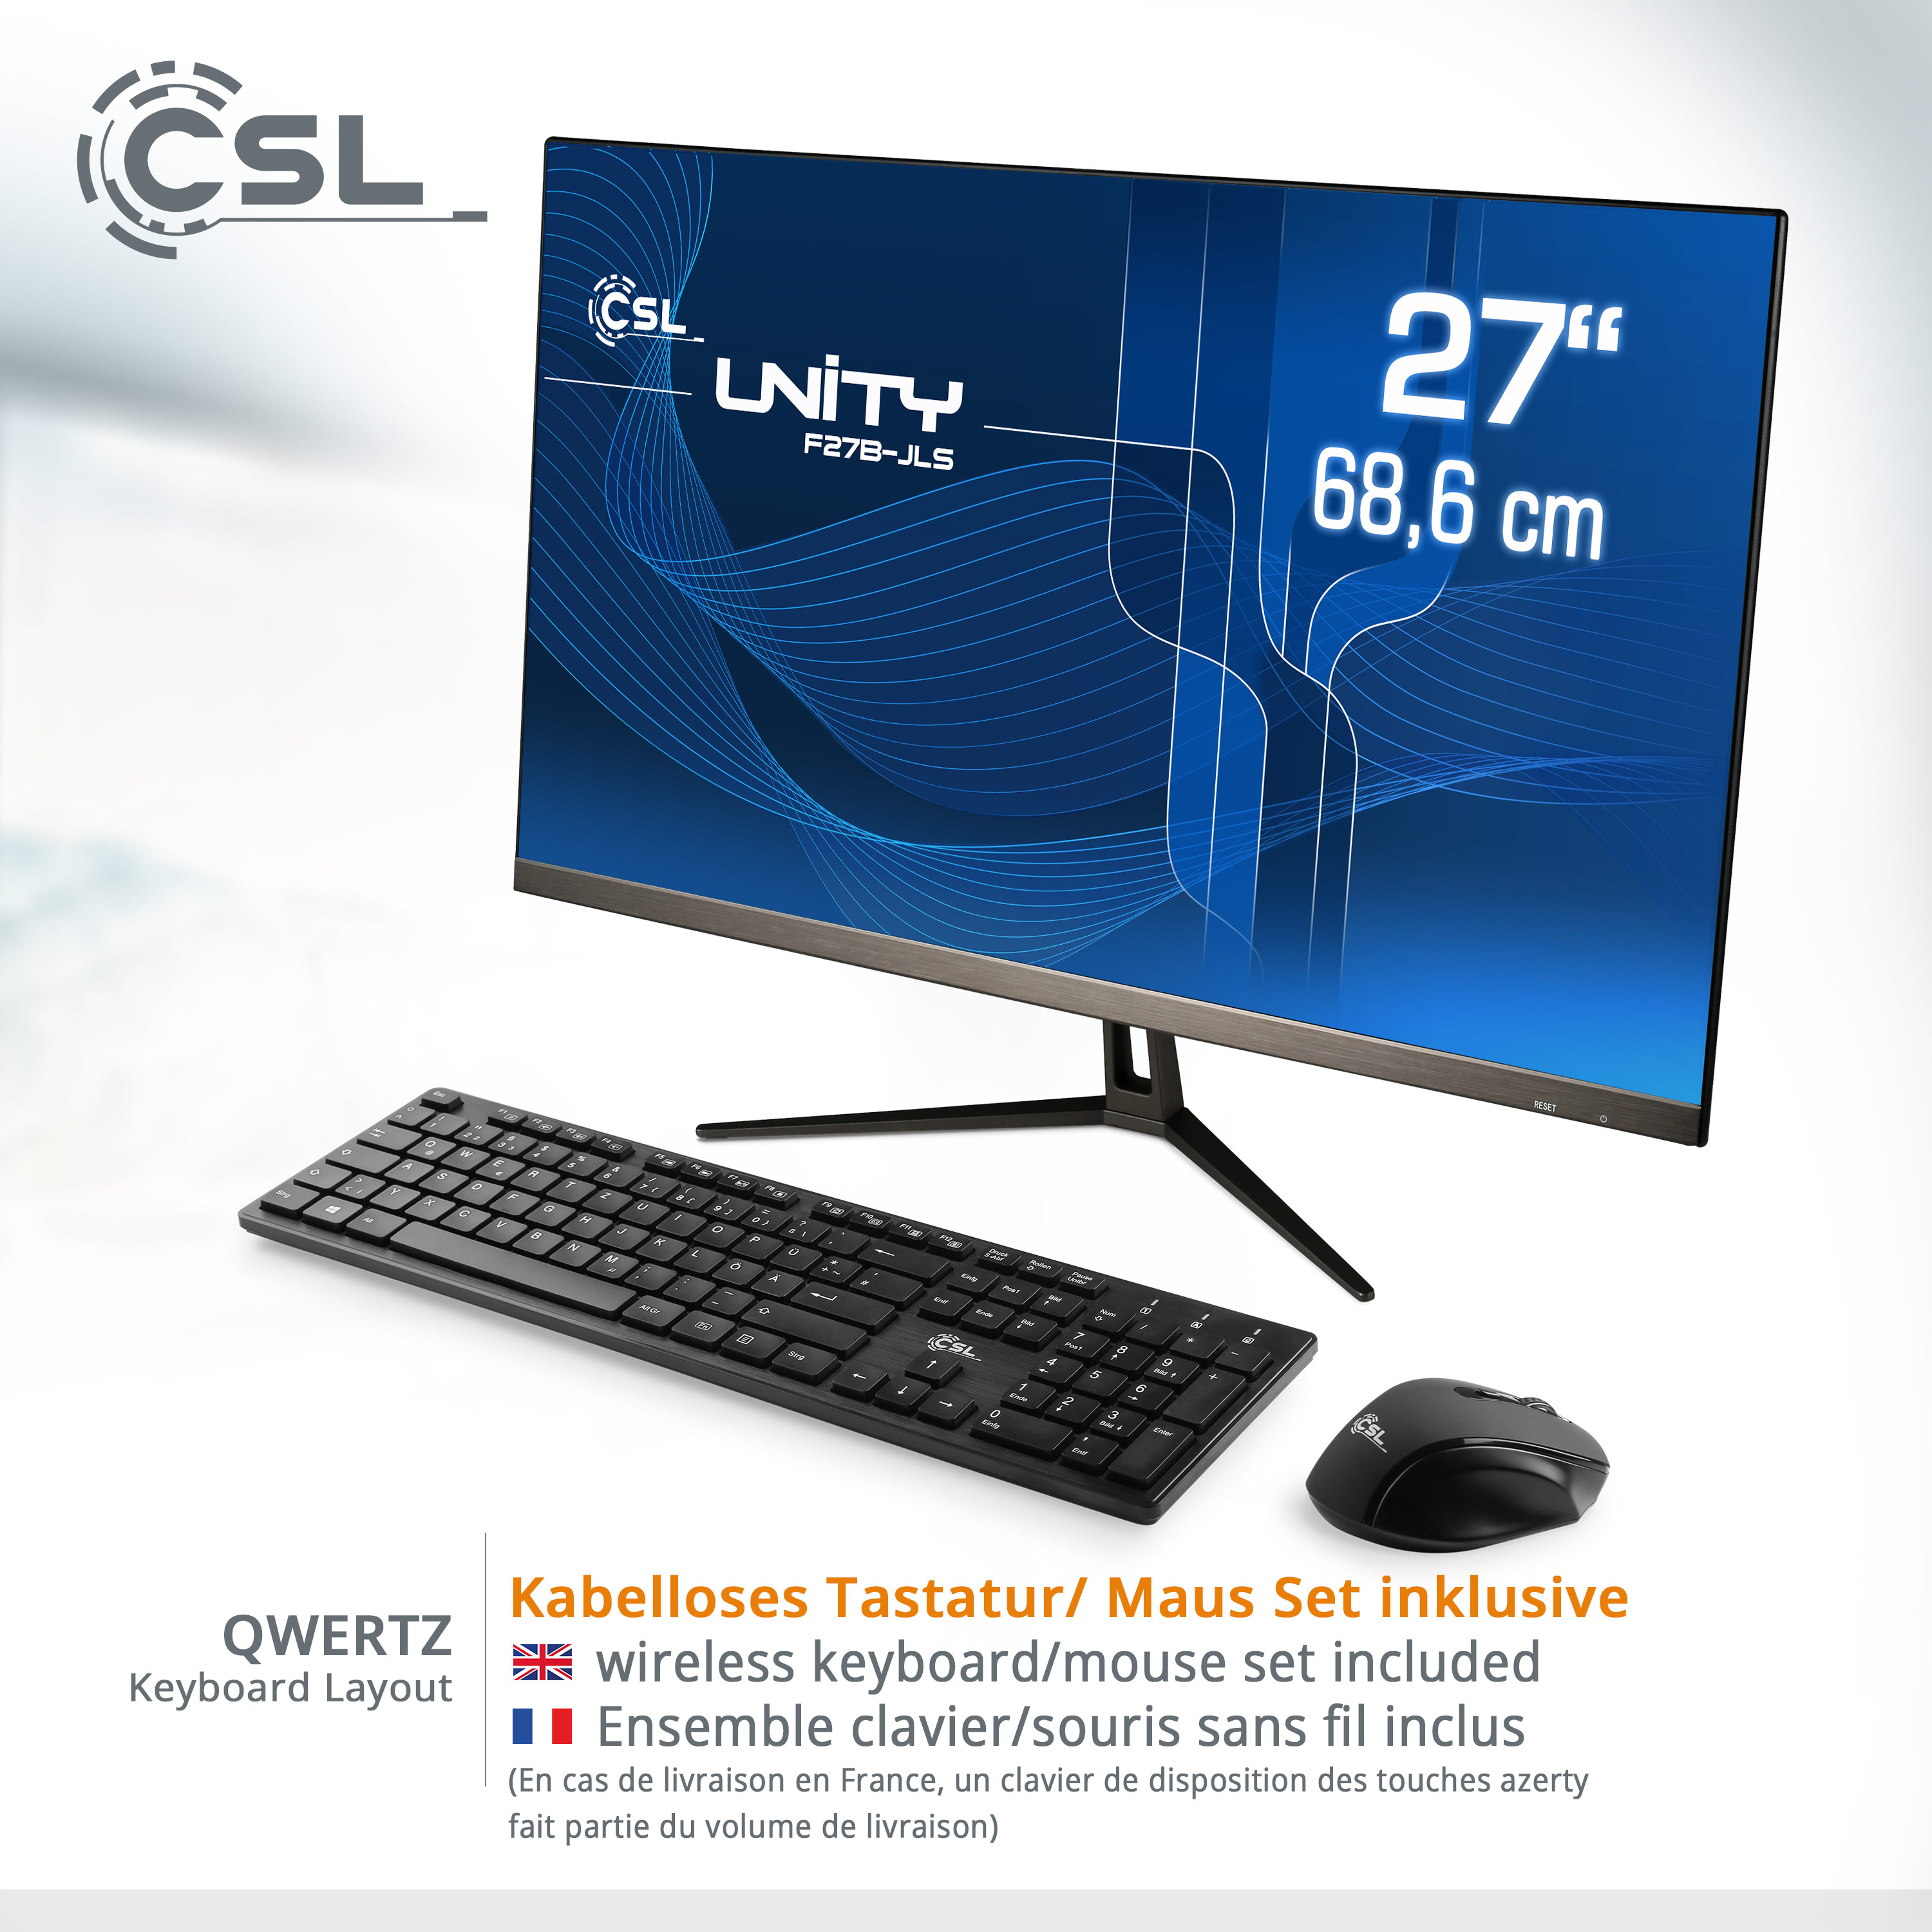 CSL Unity F27B-JLS / Graphics, / GB Zoll All-in-One-PC 27 GB 16 GB Win Pro, 256 RAM, 256 SSD, schwarz mit RAM 16 11 GB Intel® Display, / UHD